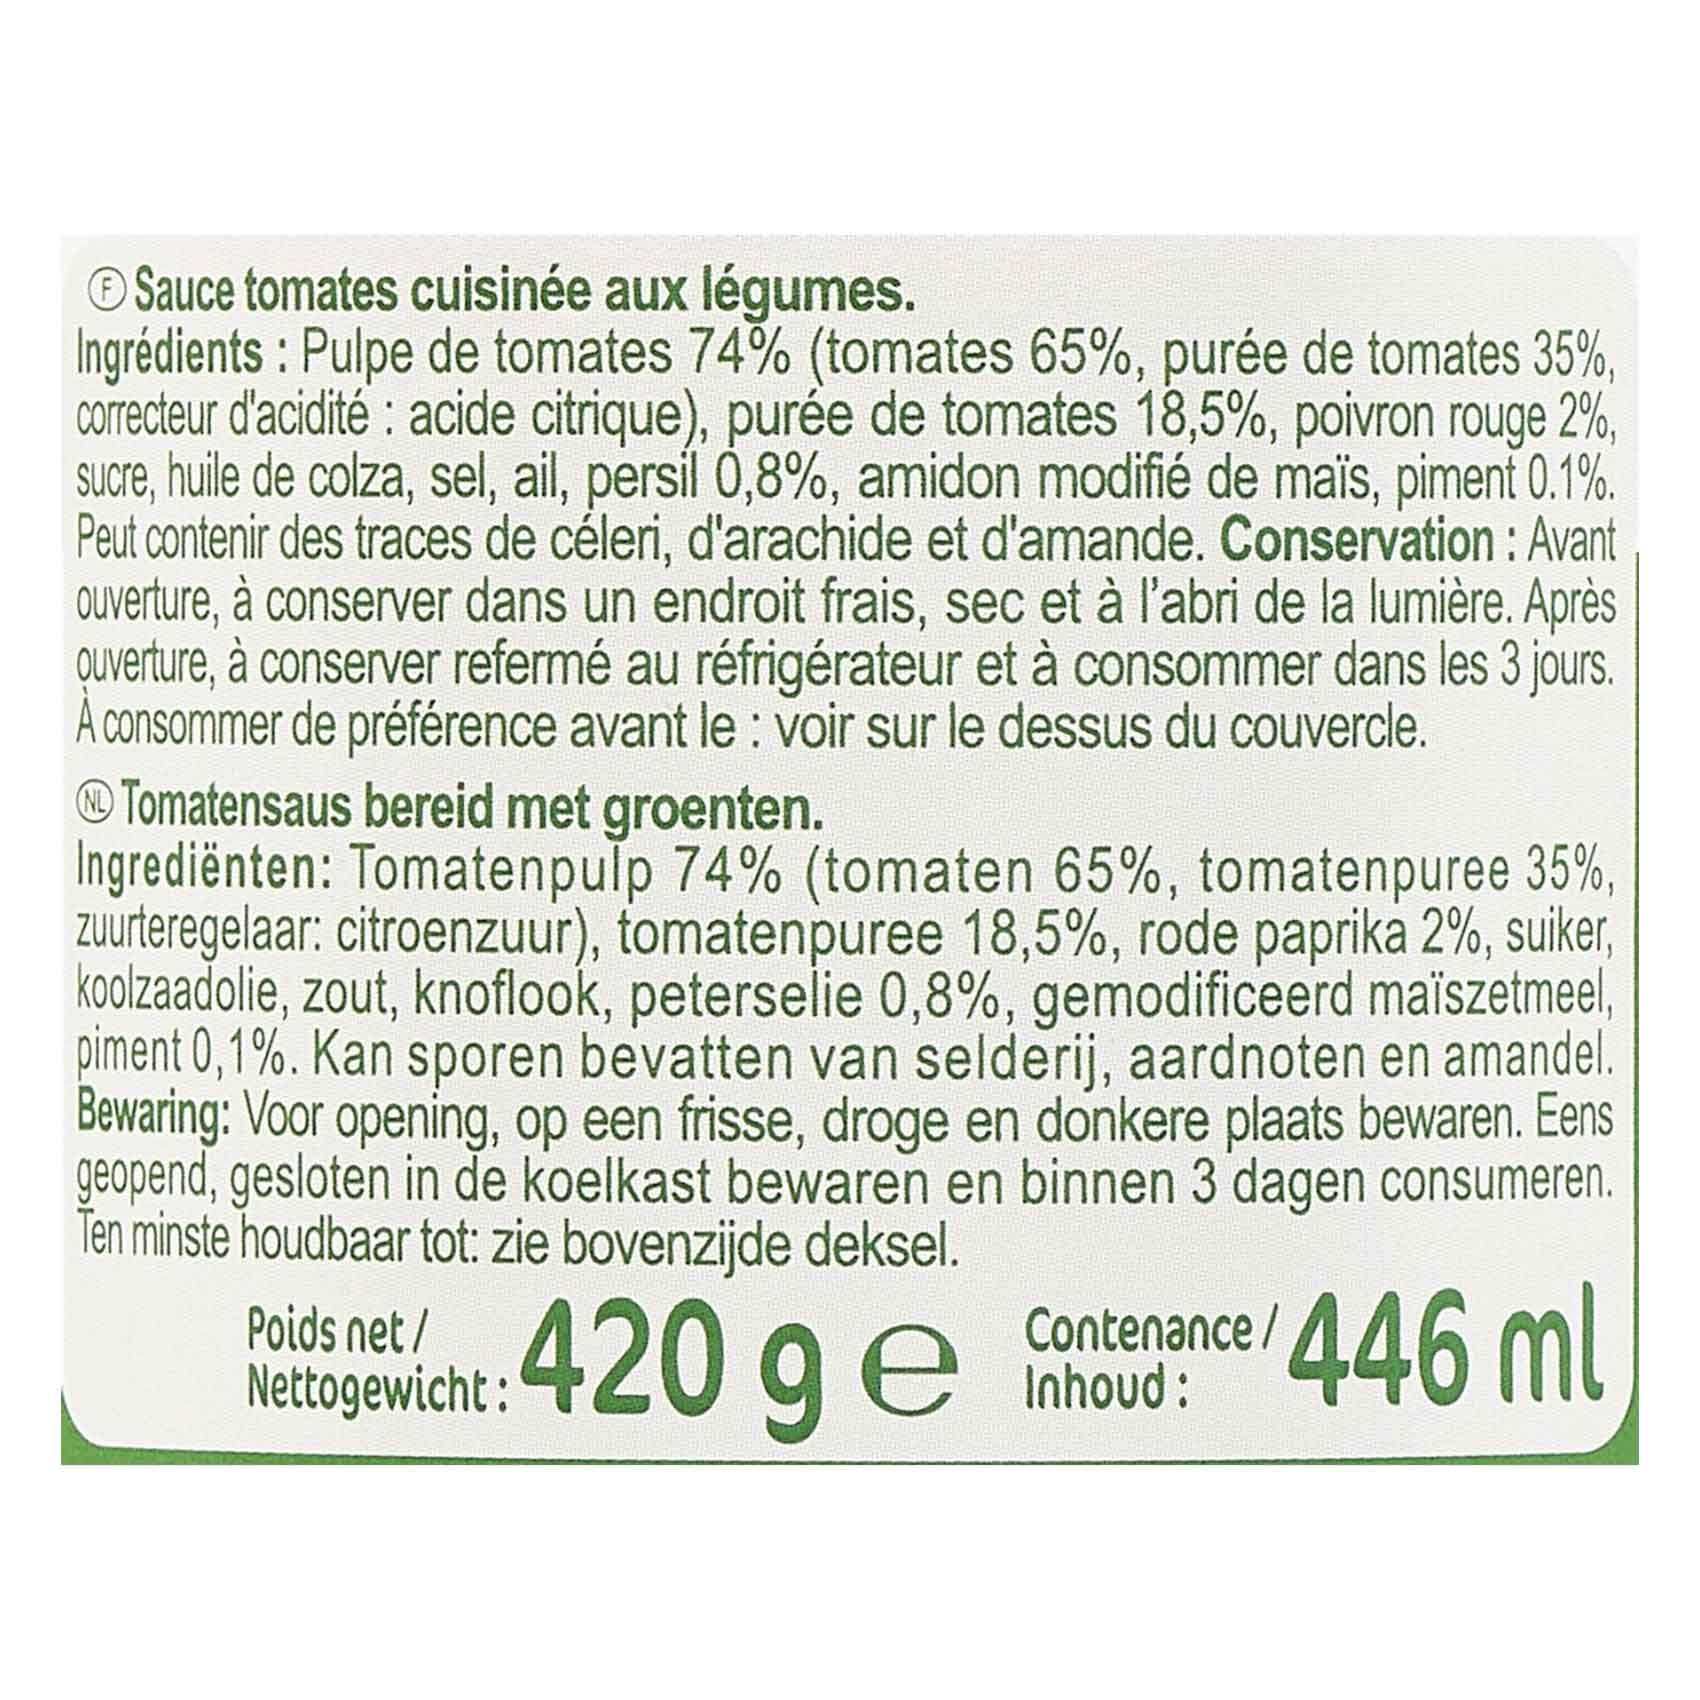 Carrefour Arrabiata Sauce 420GR